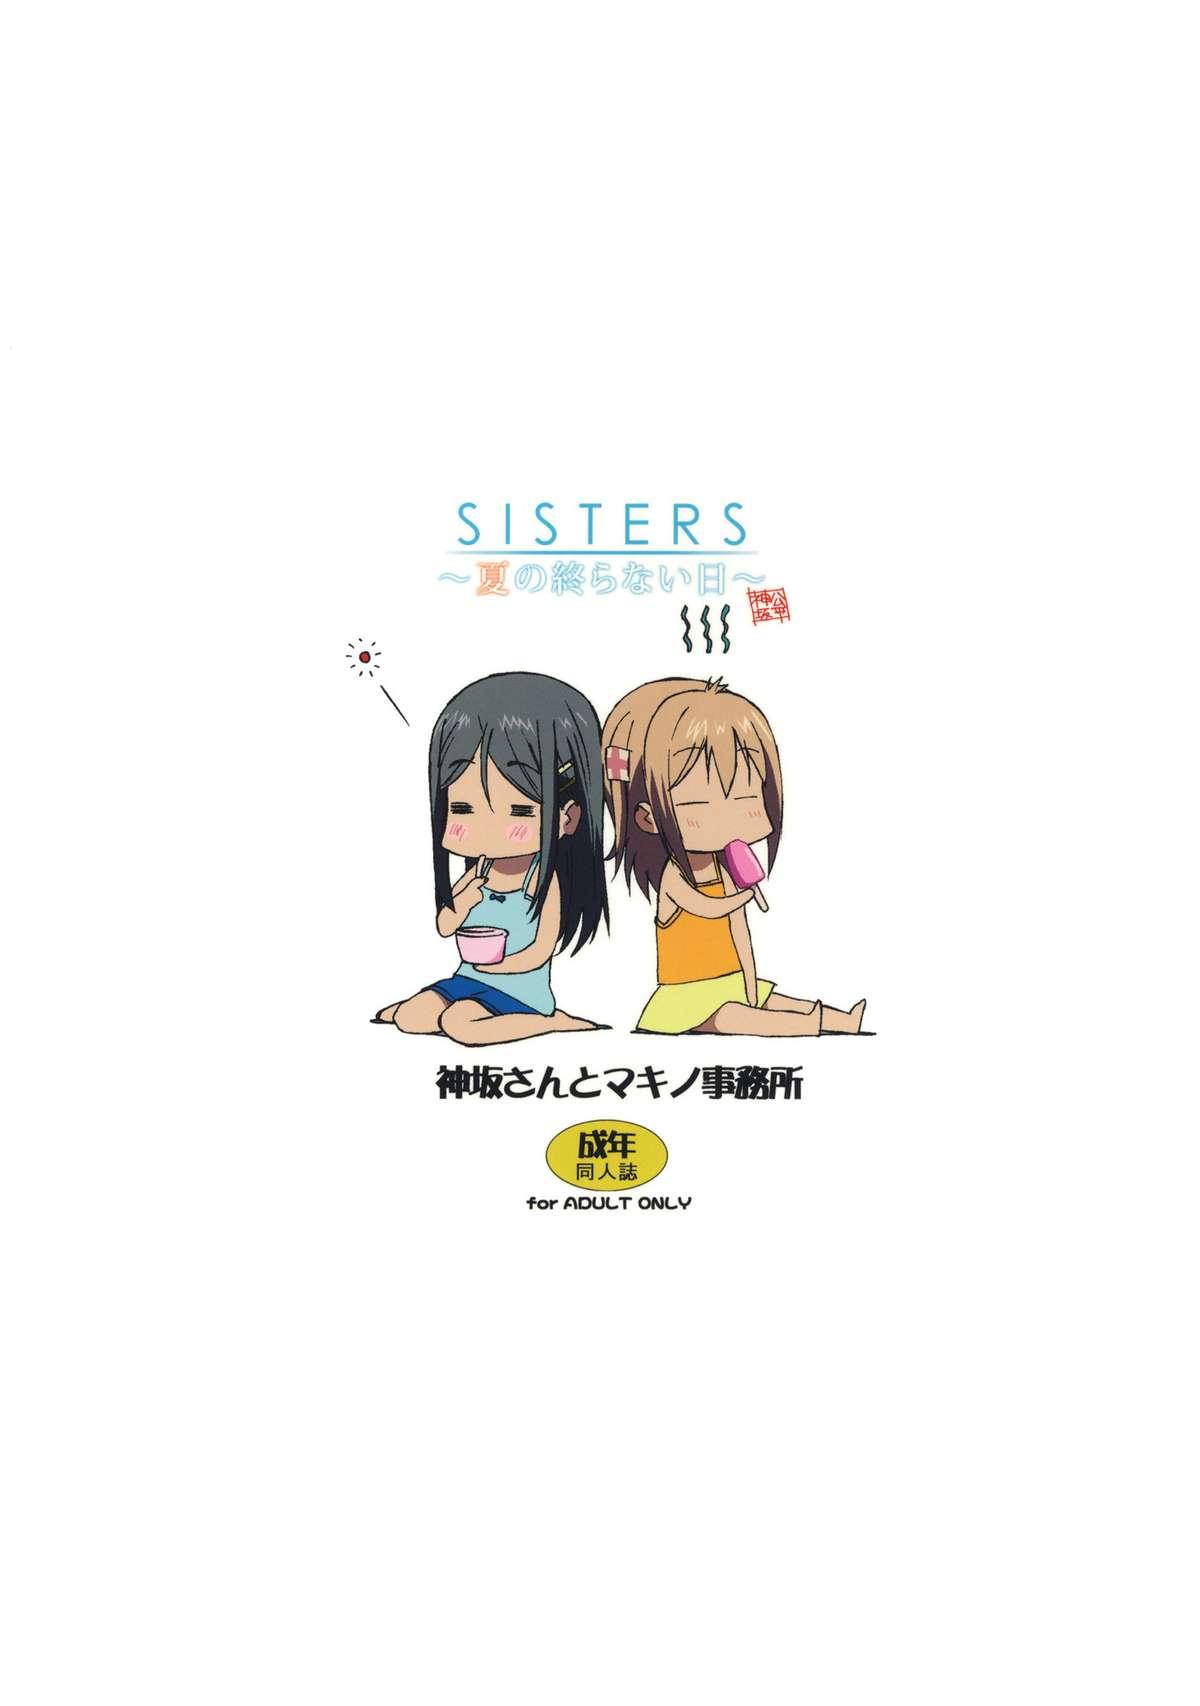 Cdmx SISTERS - Kakusareta Kioku, Natsu no Owaranai Hi - Sisters natsu no saigo no hi Mexicano - Page 35